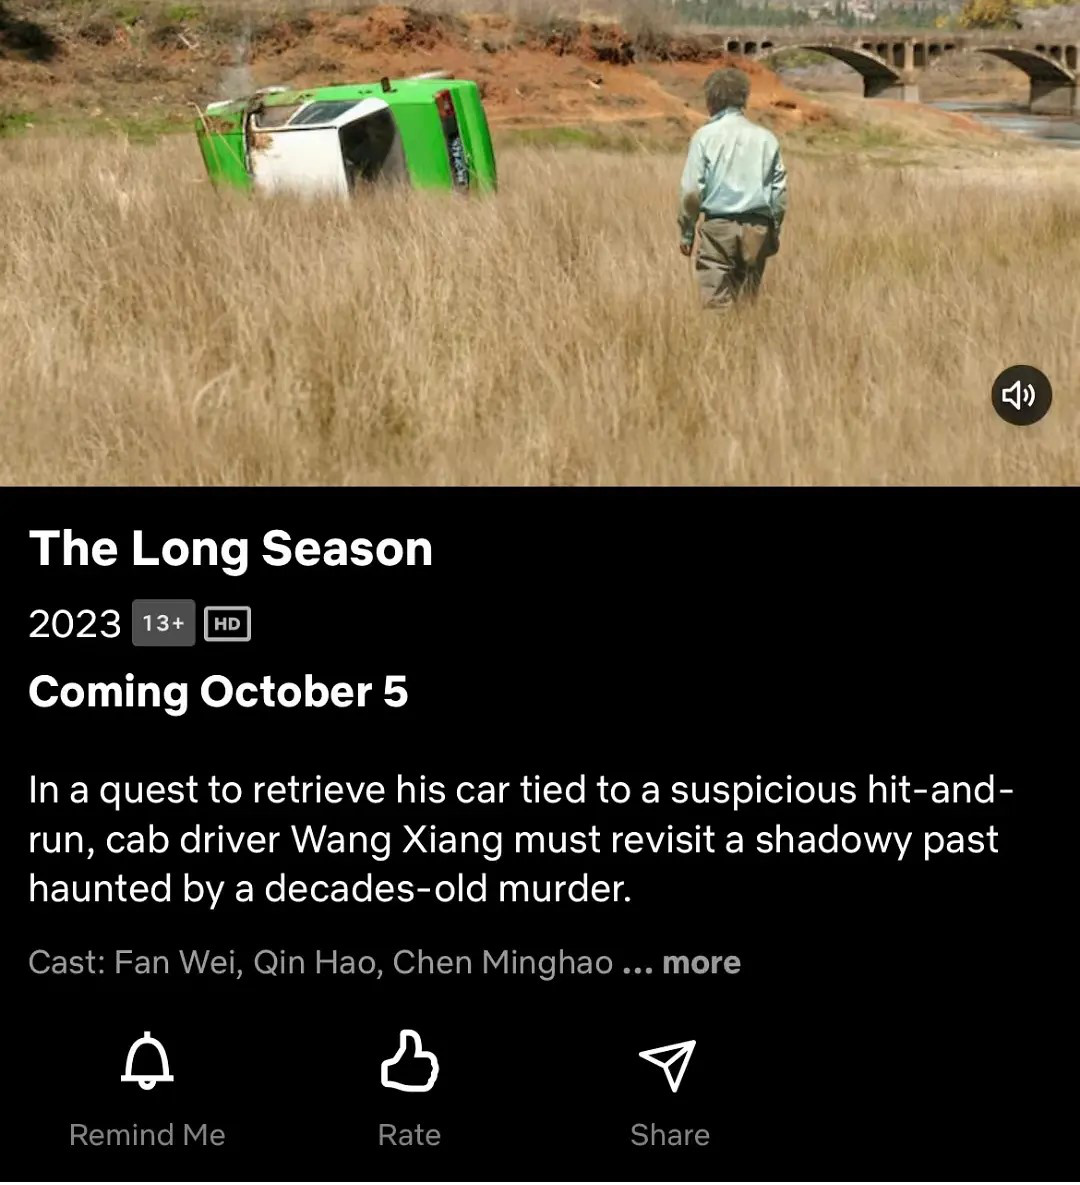 《漫长的季节》将上线海外流媒体 10月5日开播(图1)